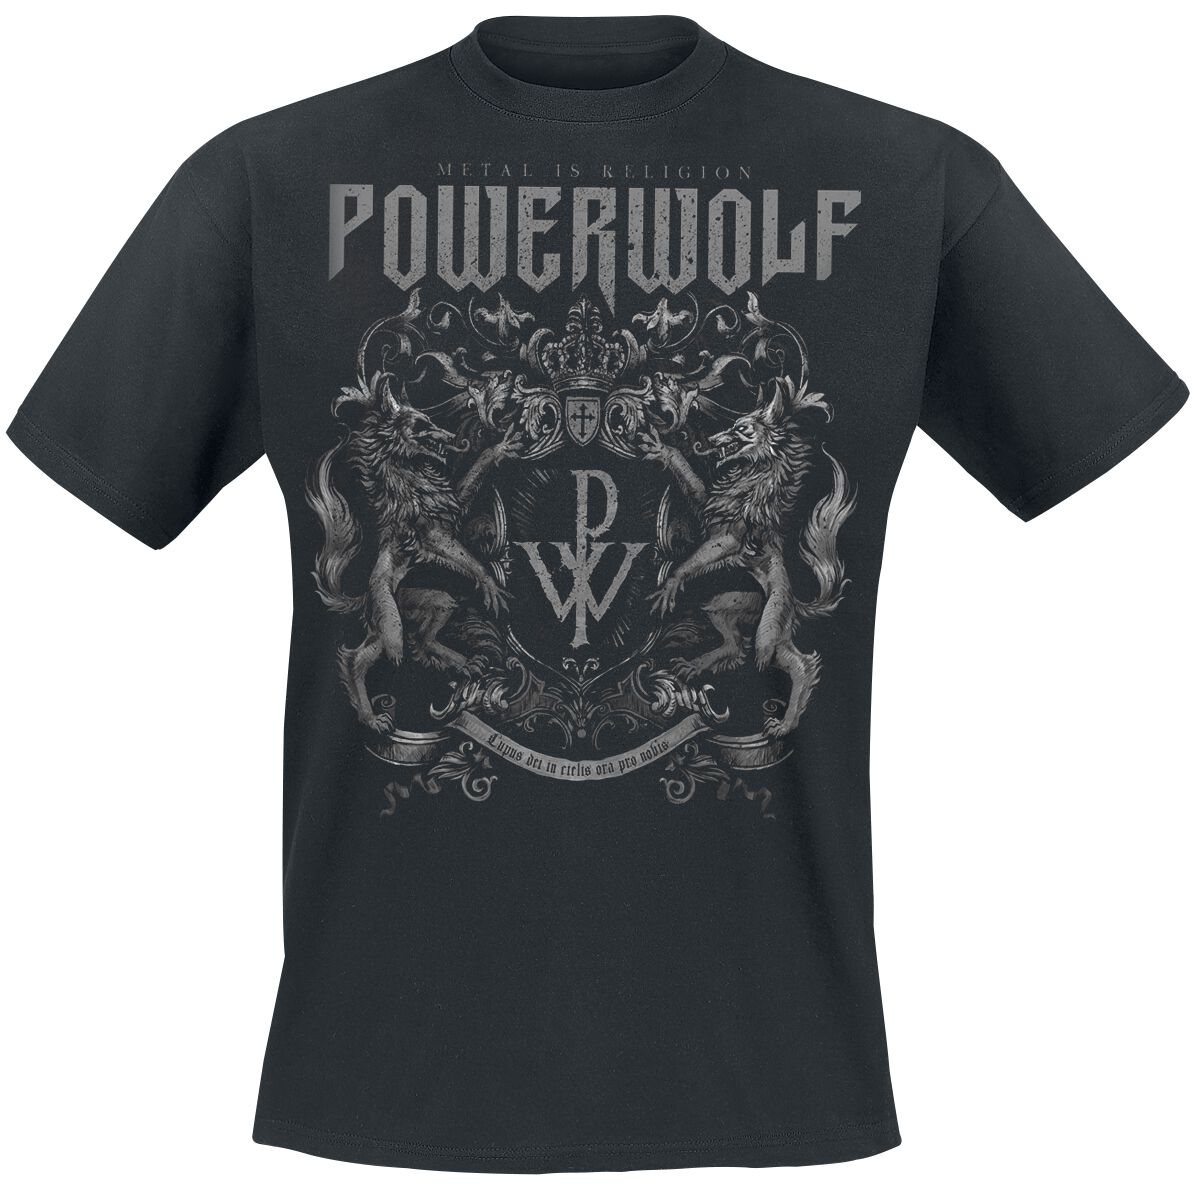 Powerwolf T-Shirt - Crest - Metal Is Religion - S bis 3XL - für Männer - Größe L - schwarz  - Lizenziertes Merchandise!